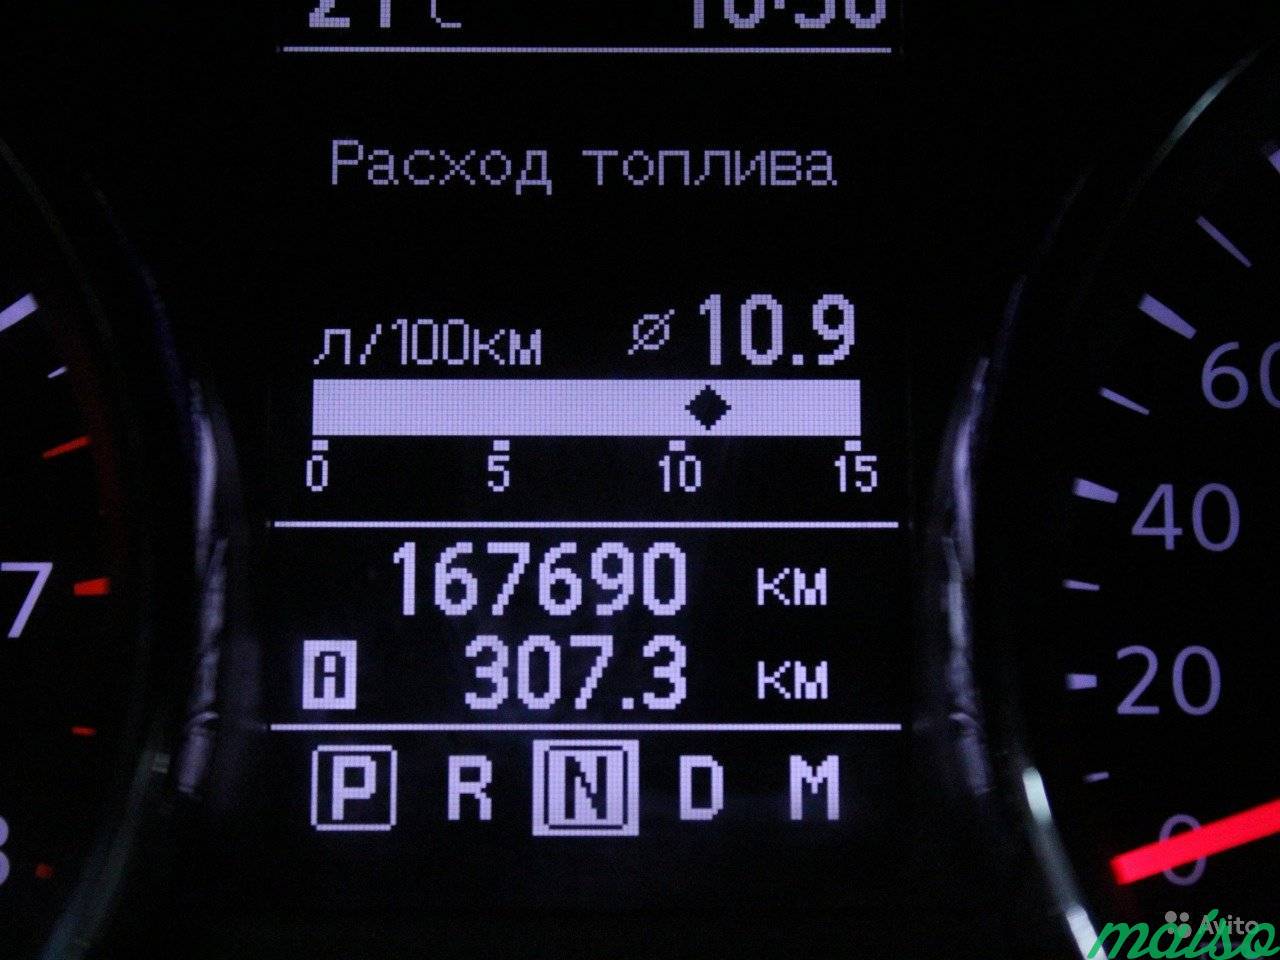 Nissan Qashqai 2.0 AT, 2011, внедорожник в Санкт-Петербурге. Фото 12